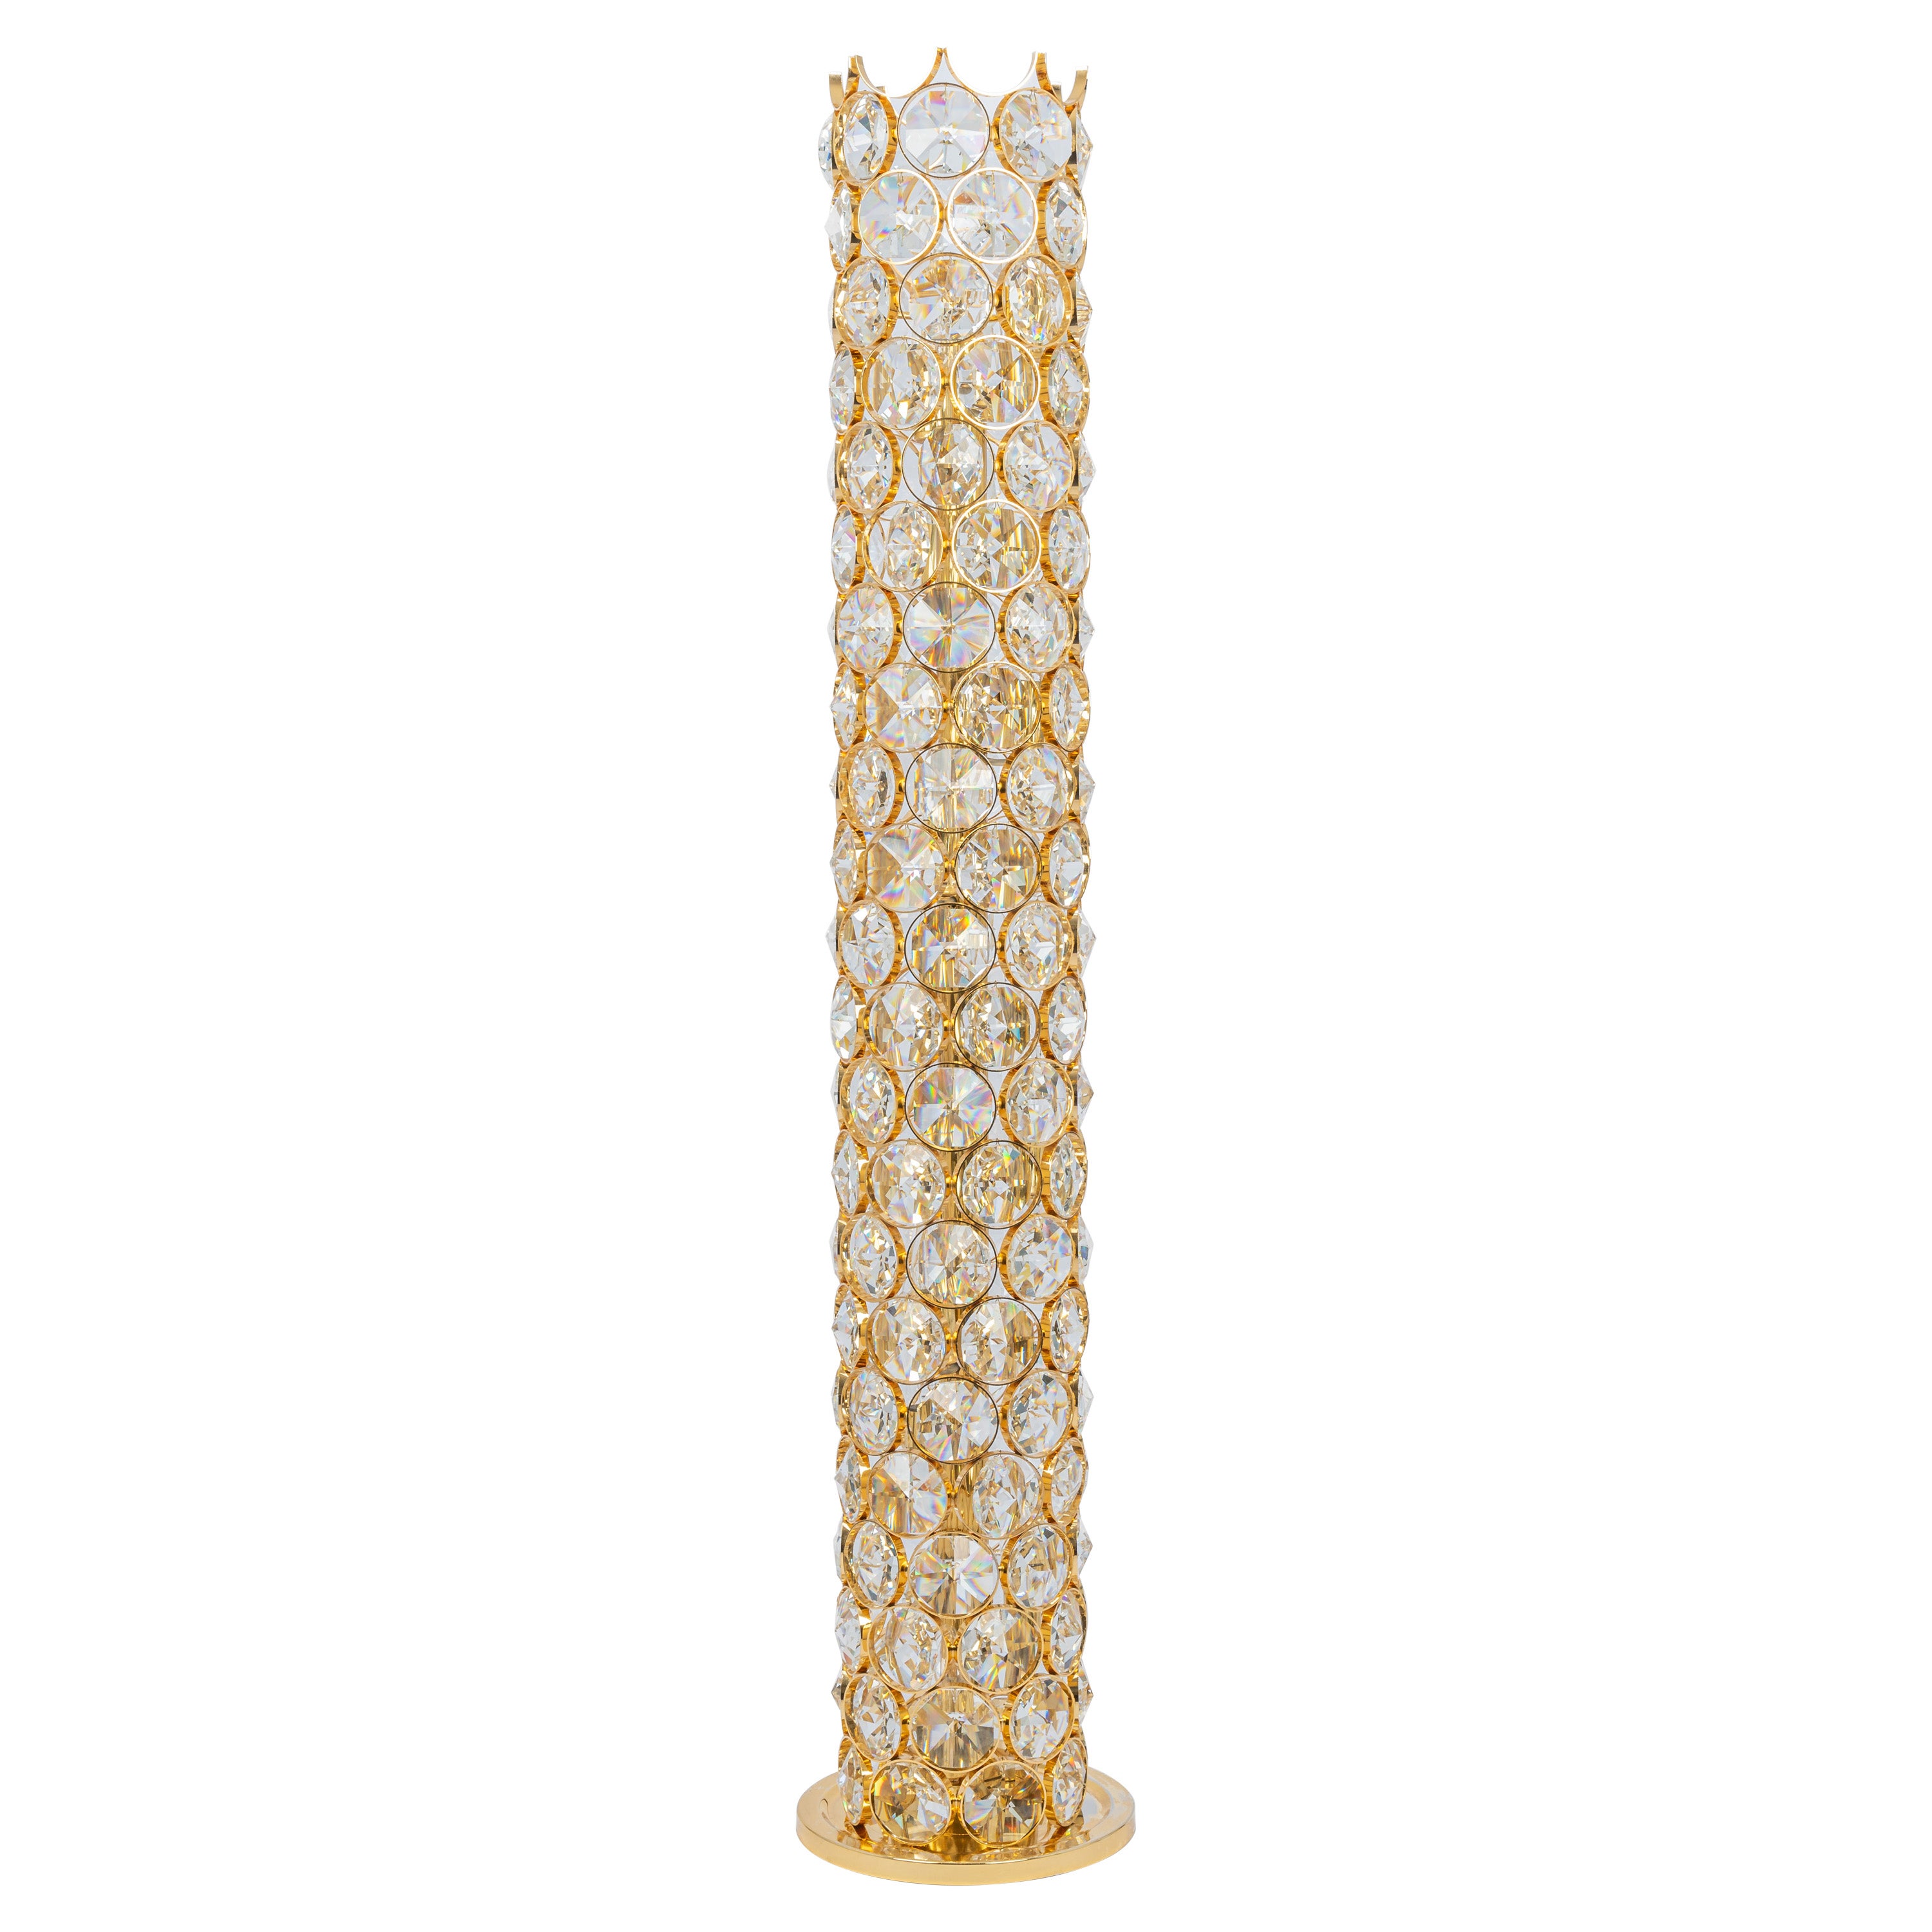 Exquisite vergoldete Juwelen-Stehlampe Sciolari Design von Palwa, Deutschland, 1960er Jahre